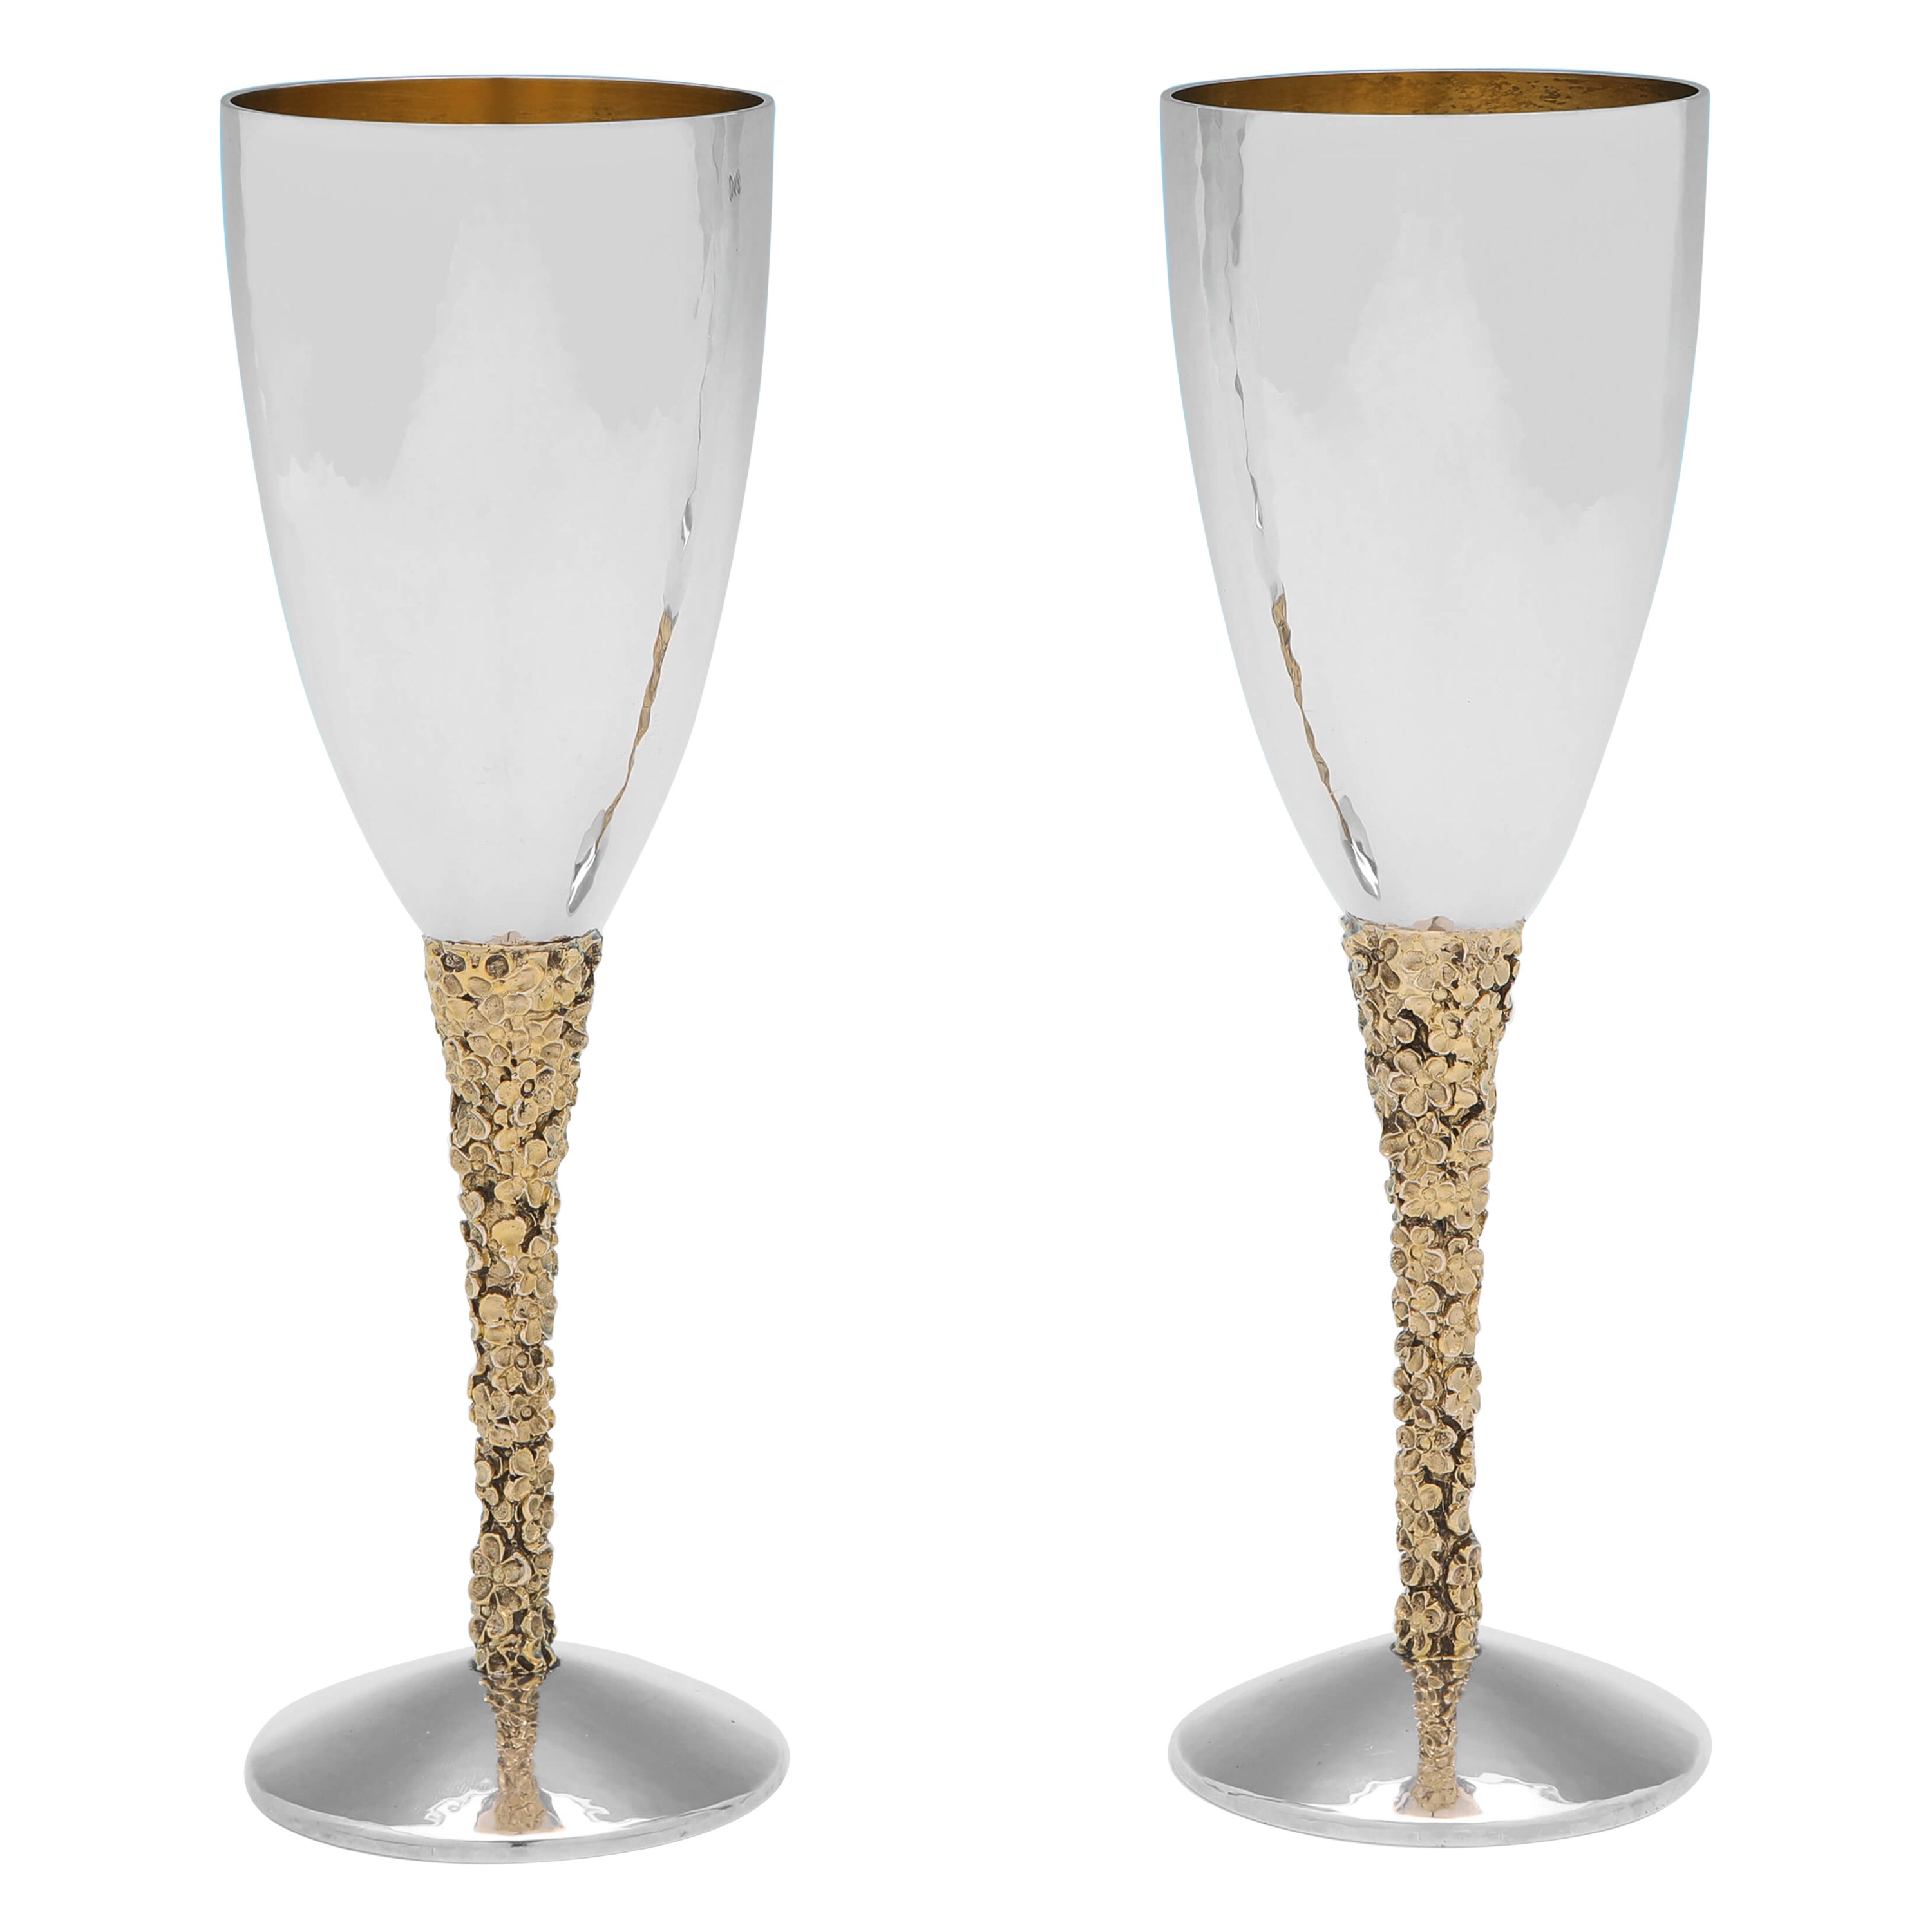 Stuart Devlin – Modernistisches Design aus Sterlingsilber und vergoldeten Champagnerflöten – 1977